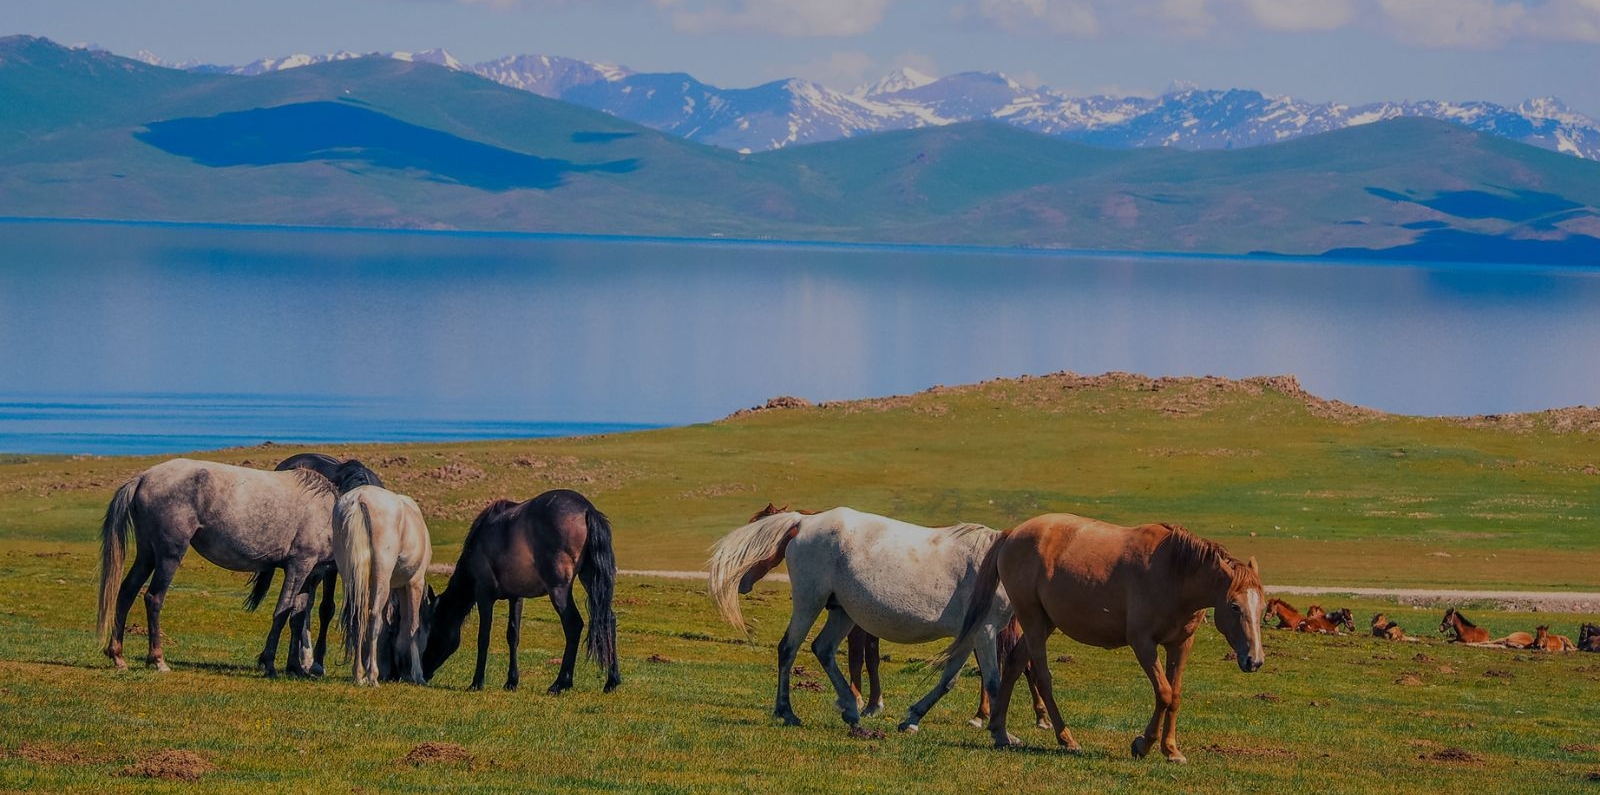 Son Kul Lake, Kyrgyzstan